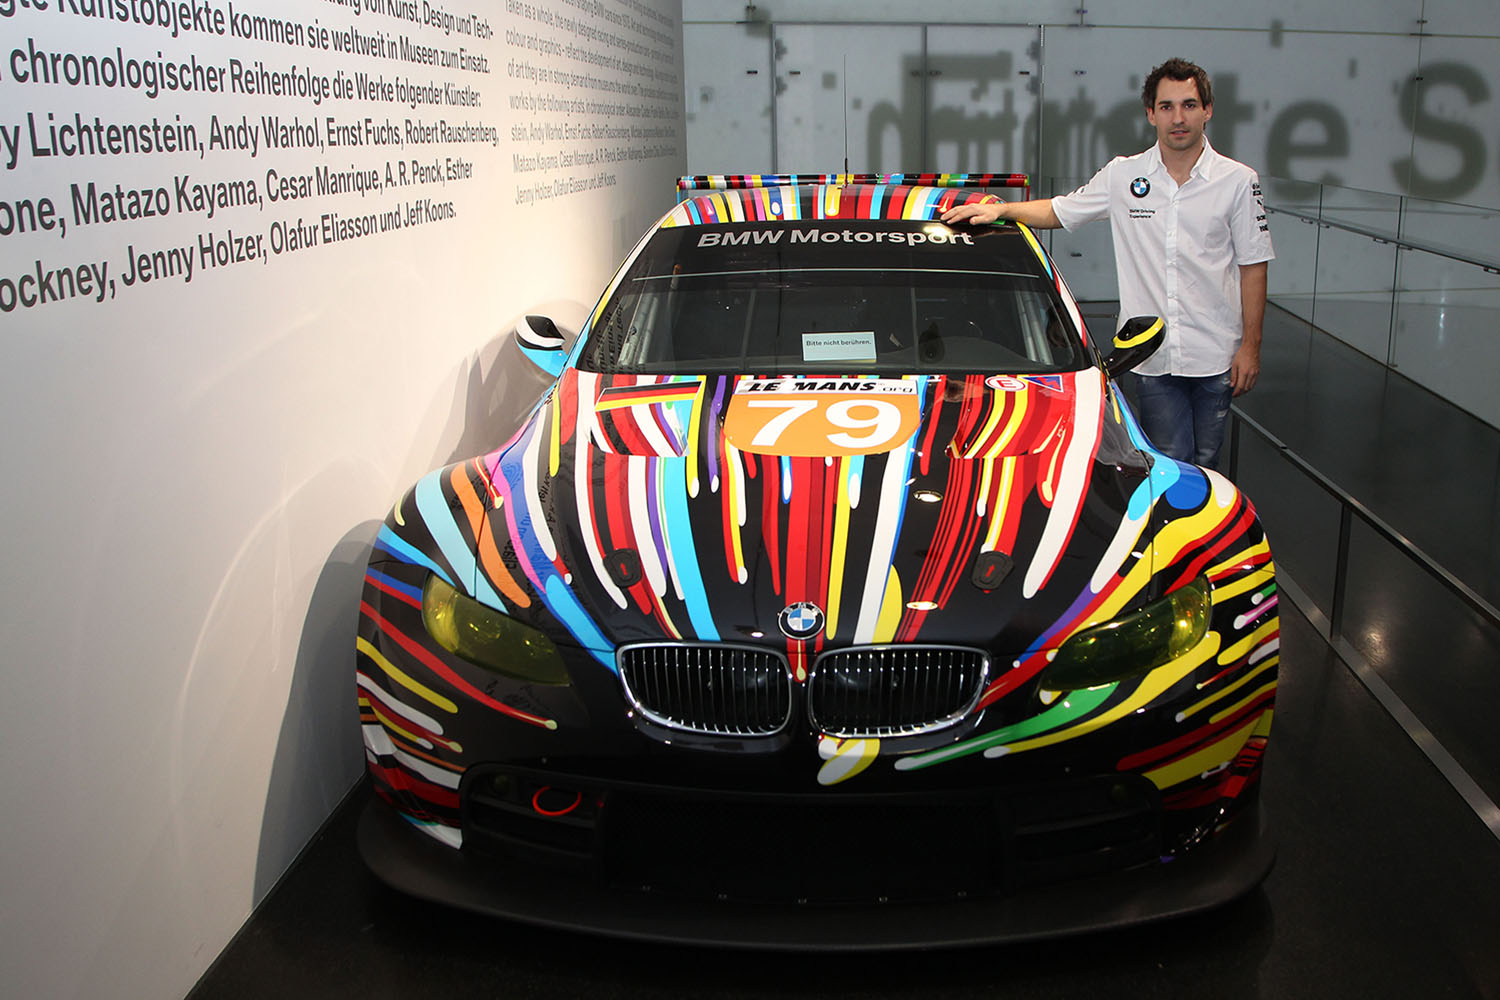 2010年のル・マン24時間に出場したジェフ・クーンズのBMWアートカーM3 GTSの正面フロントスタイリング